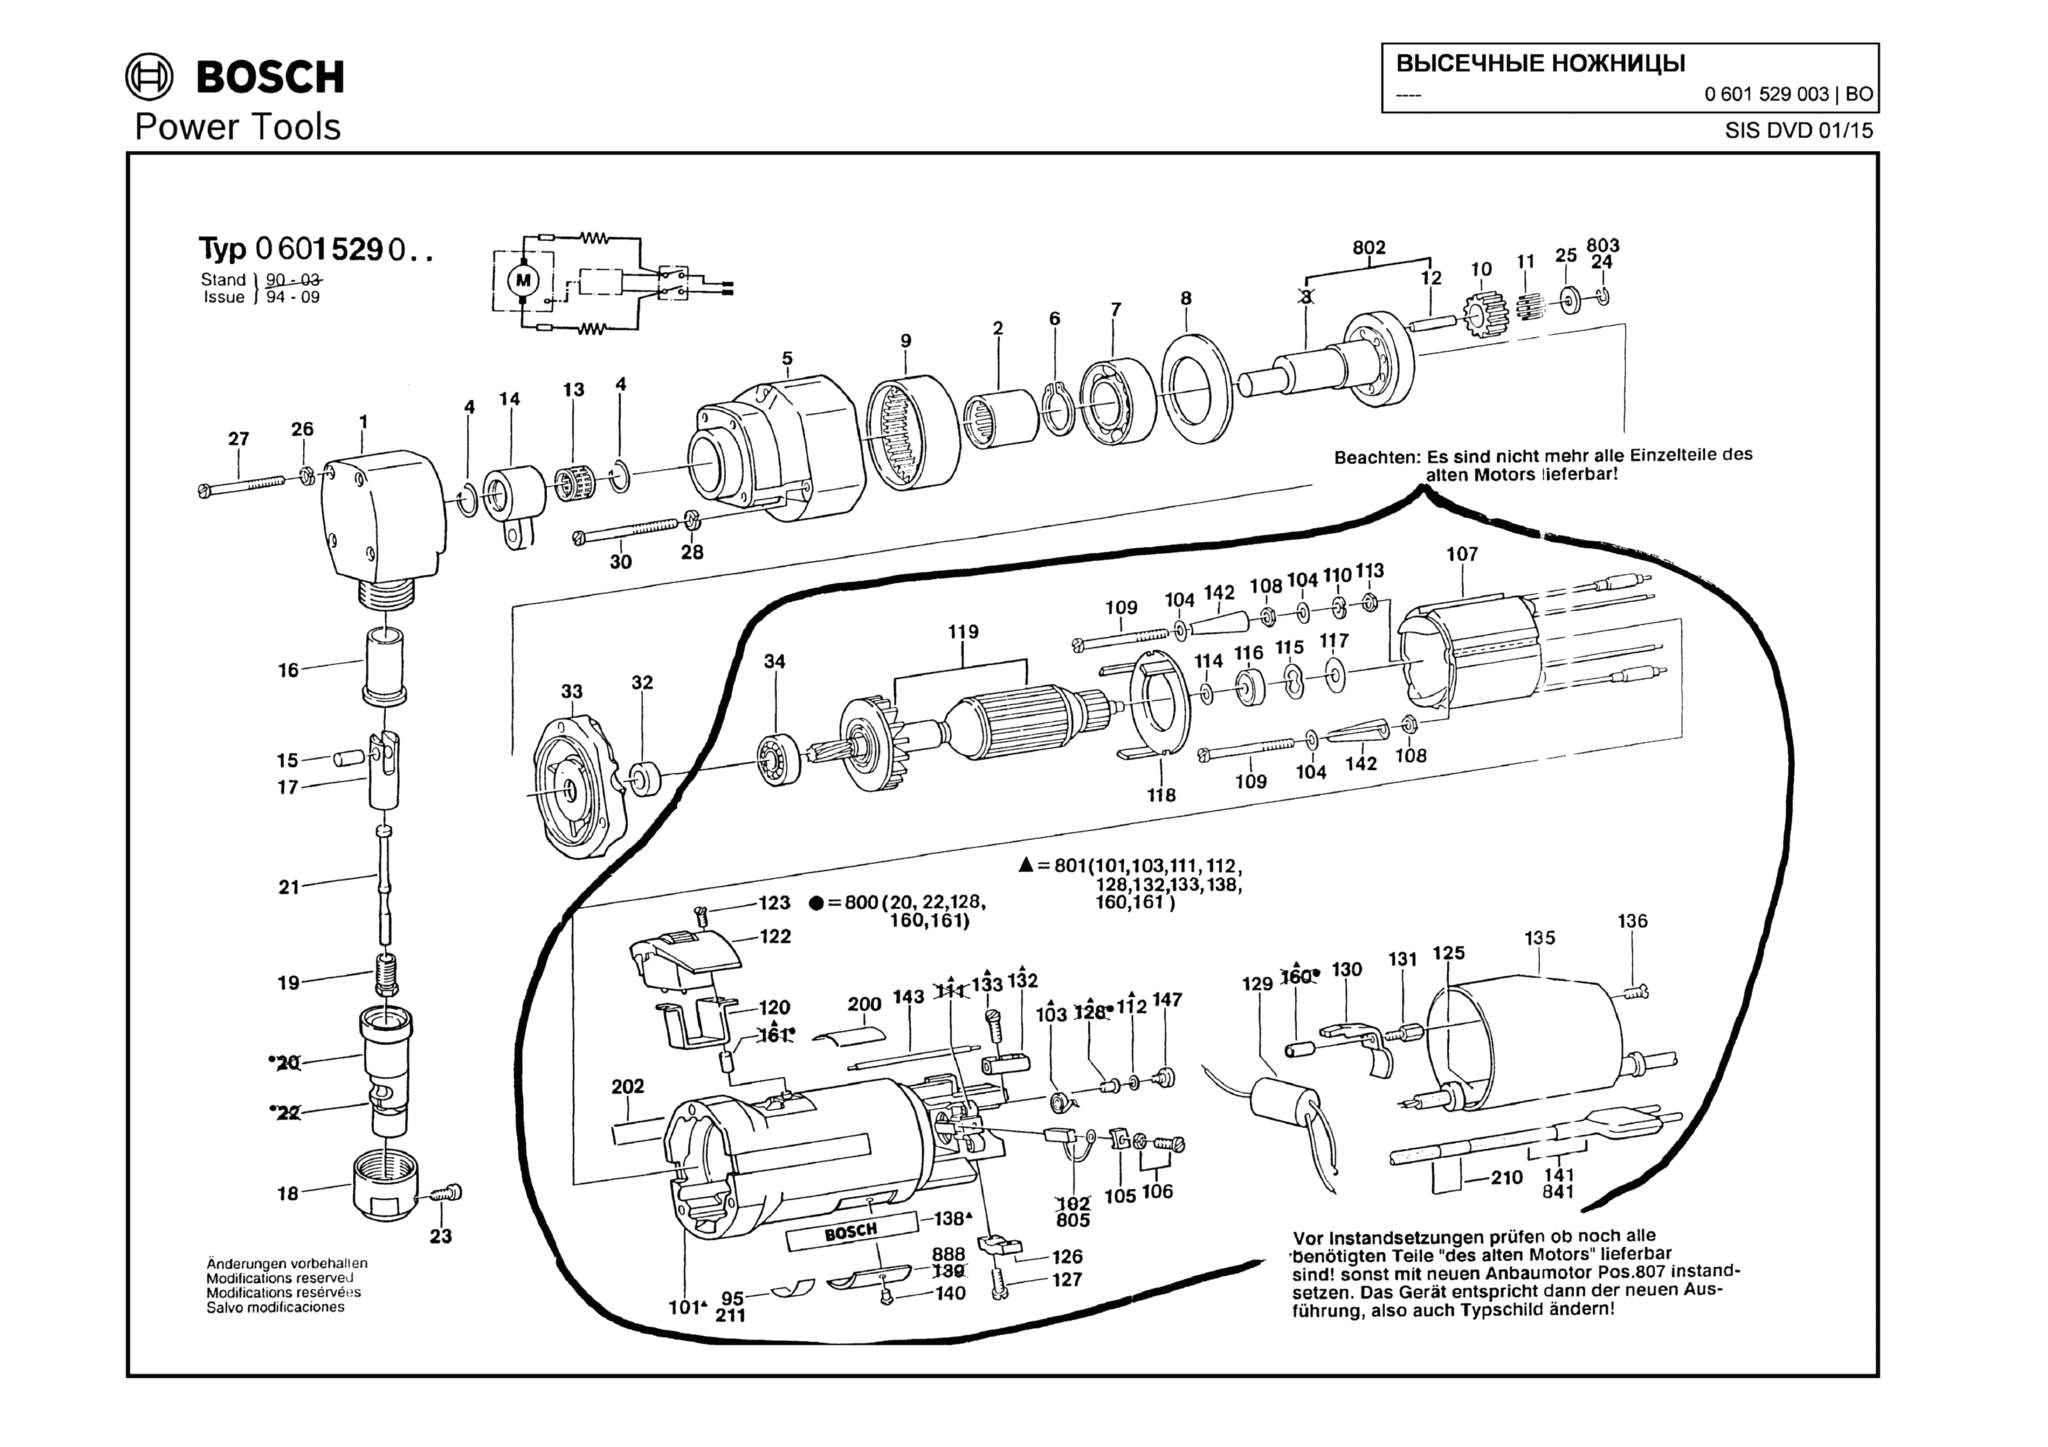 Запчасти, схема и деталировка Bosch (ТИП 0601529003)